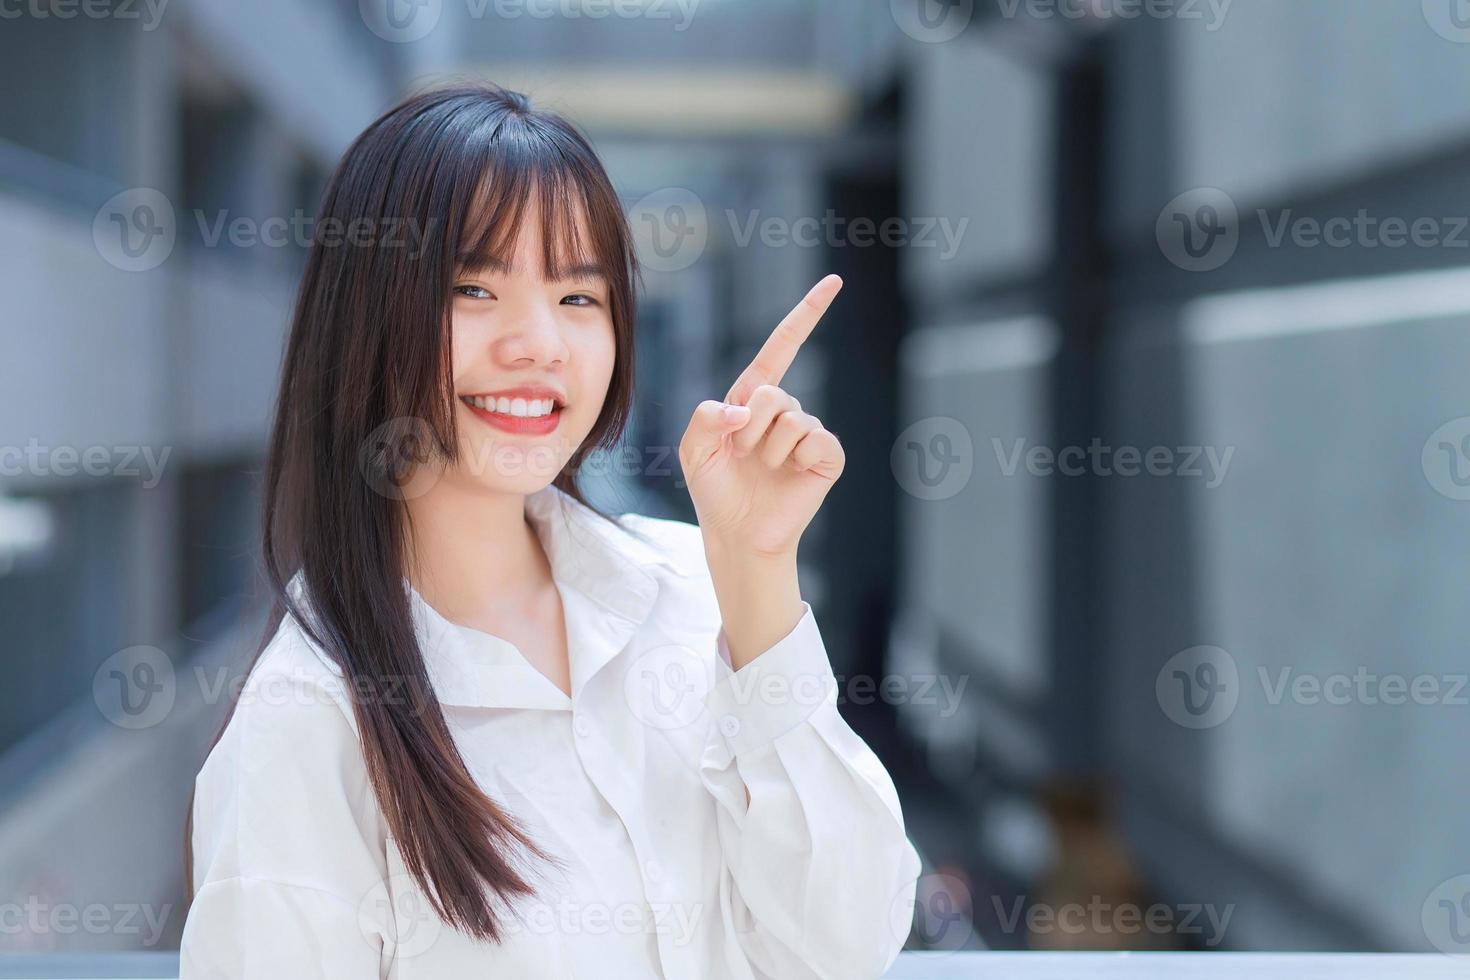 profissional jovem trabalhadora asiática que veste camisa branca está apontando a mão para apresentar algo ao ar livre na cidade com um prédio de escritórios ao fundo. foto